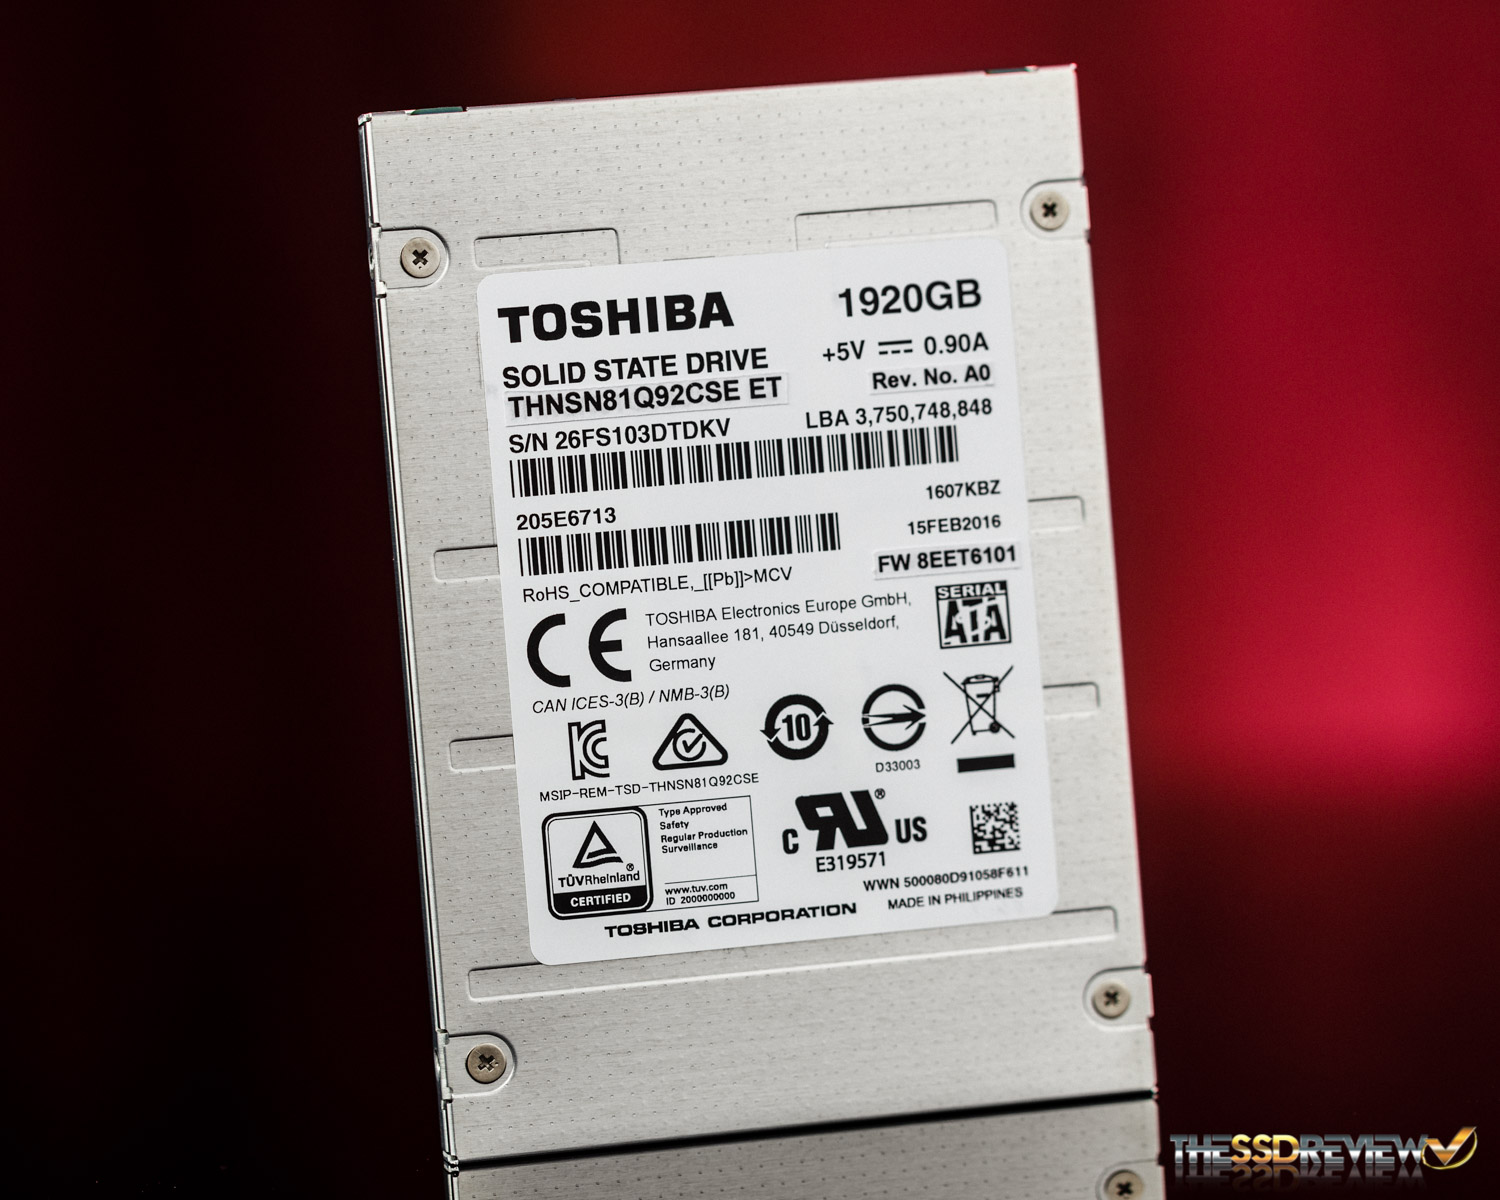 Toshiba HK4R Enterprise SSD Review (1920GB) | The SSD Review